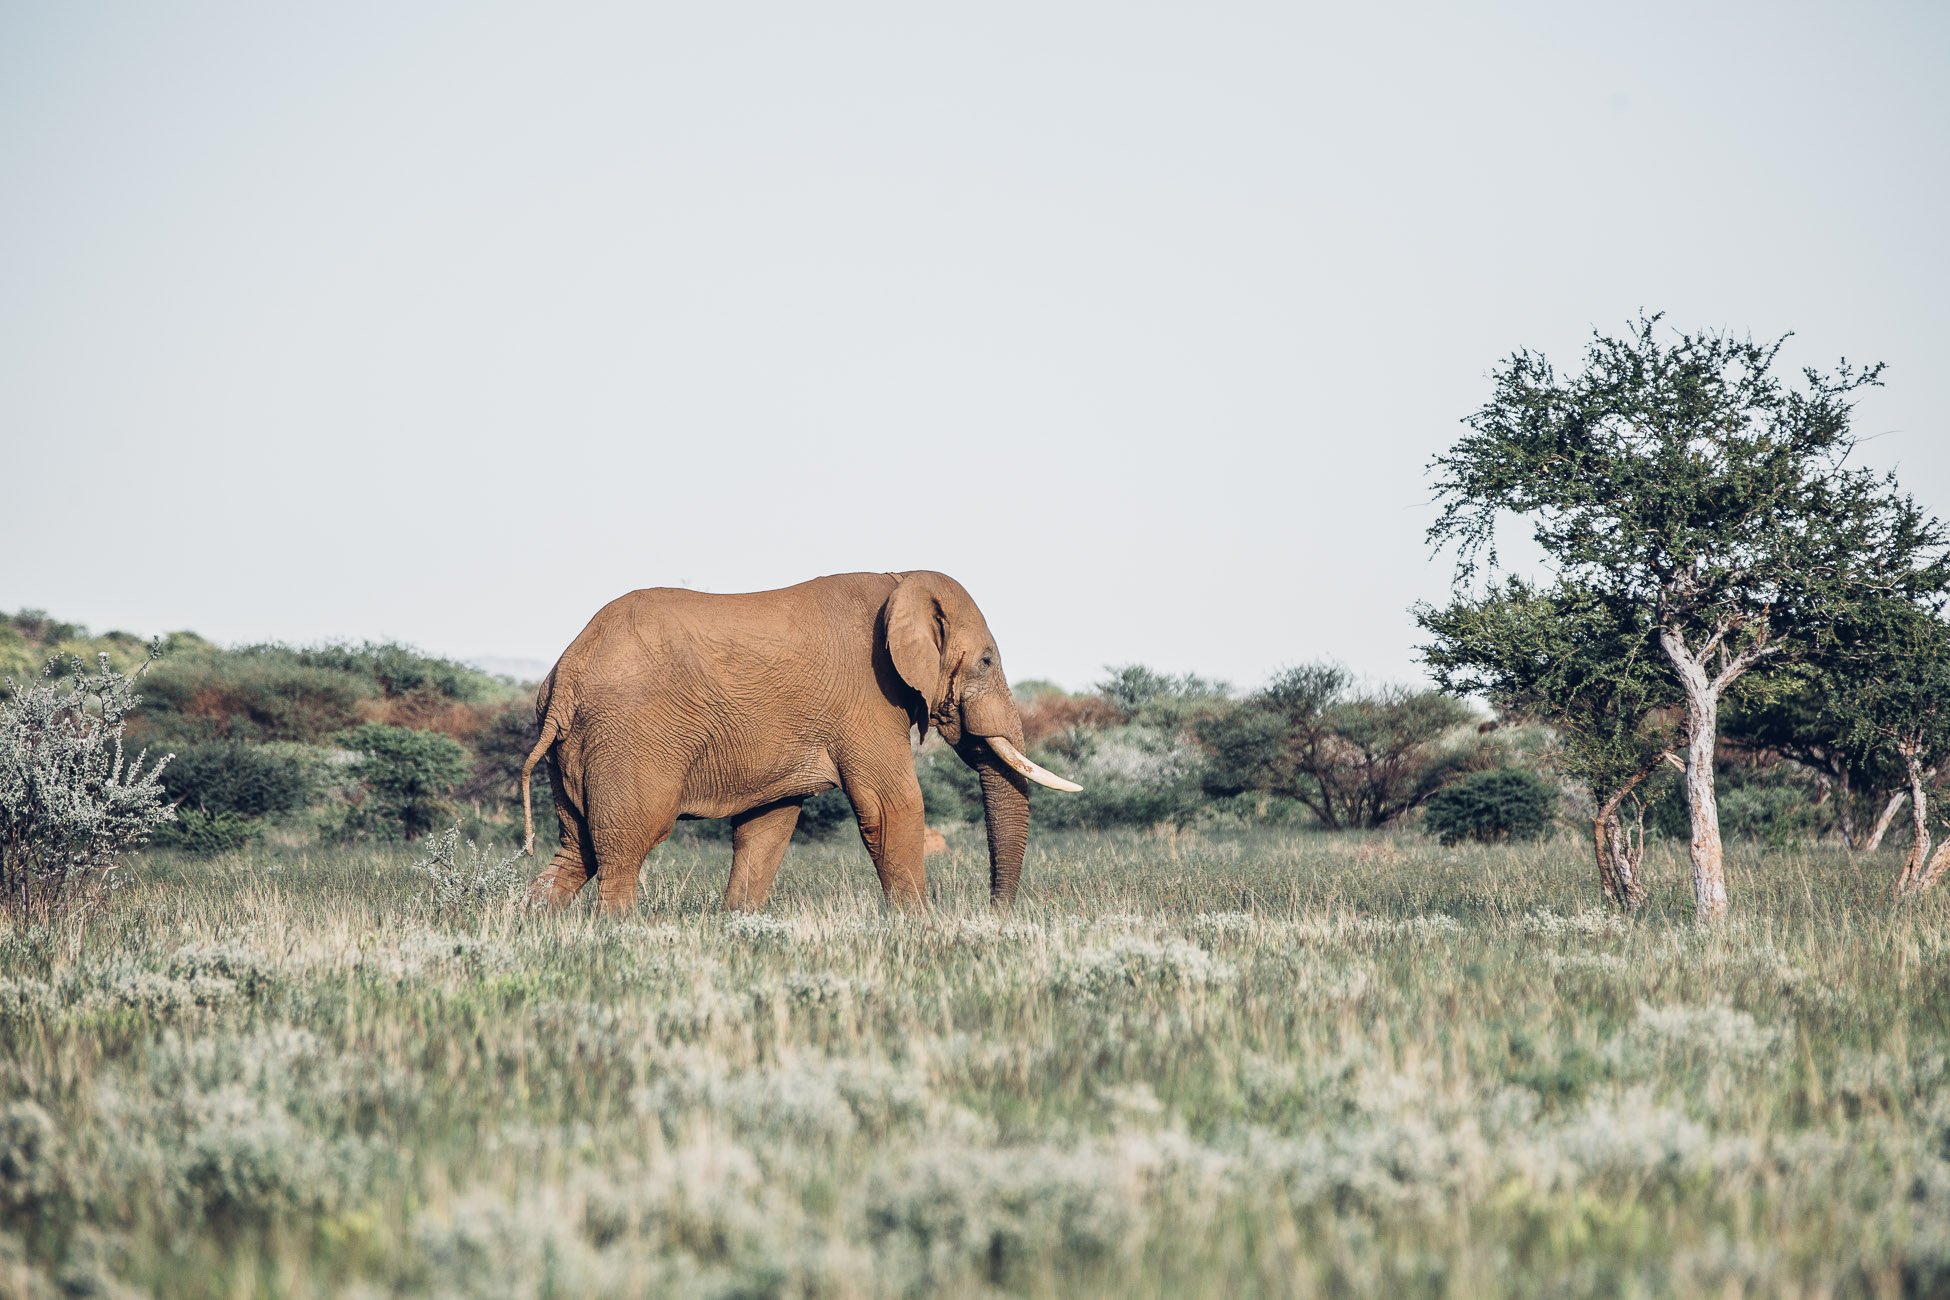 Elephant at a Safari in Namibia